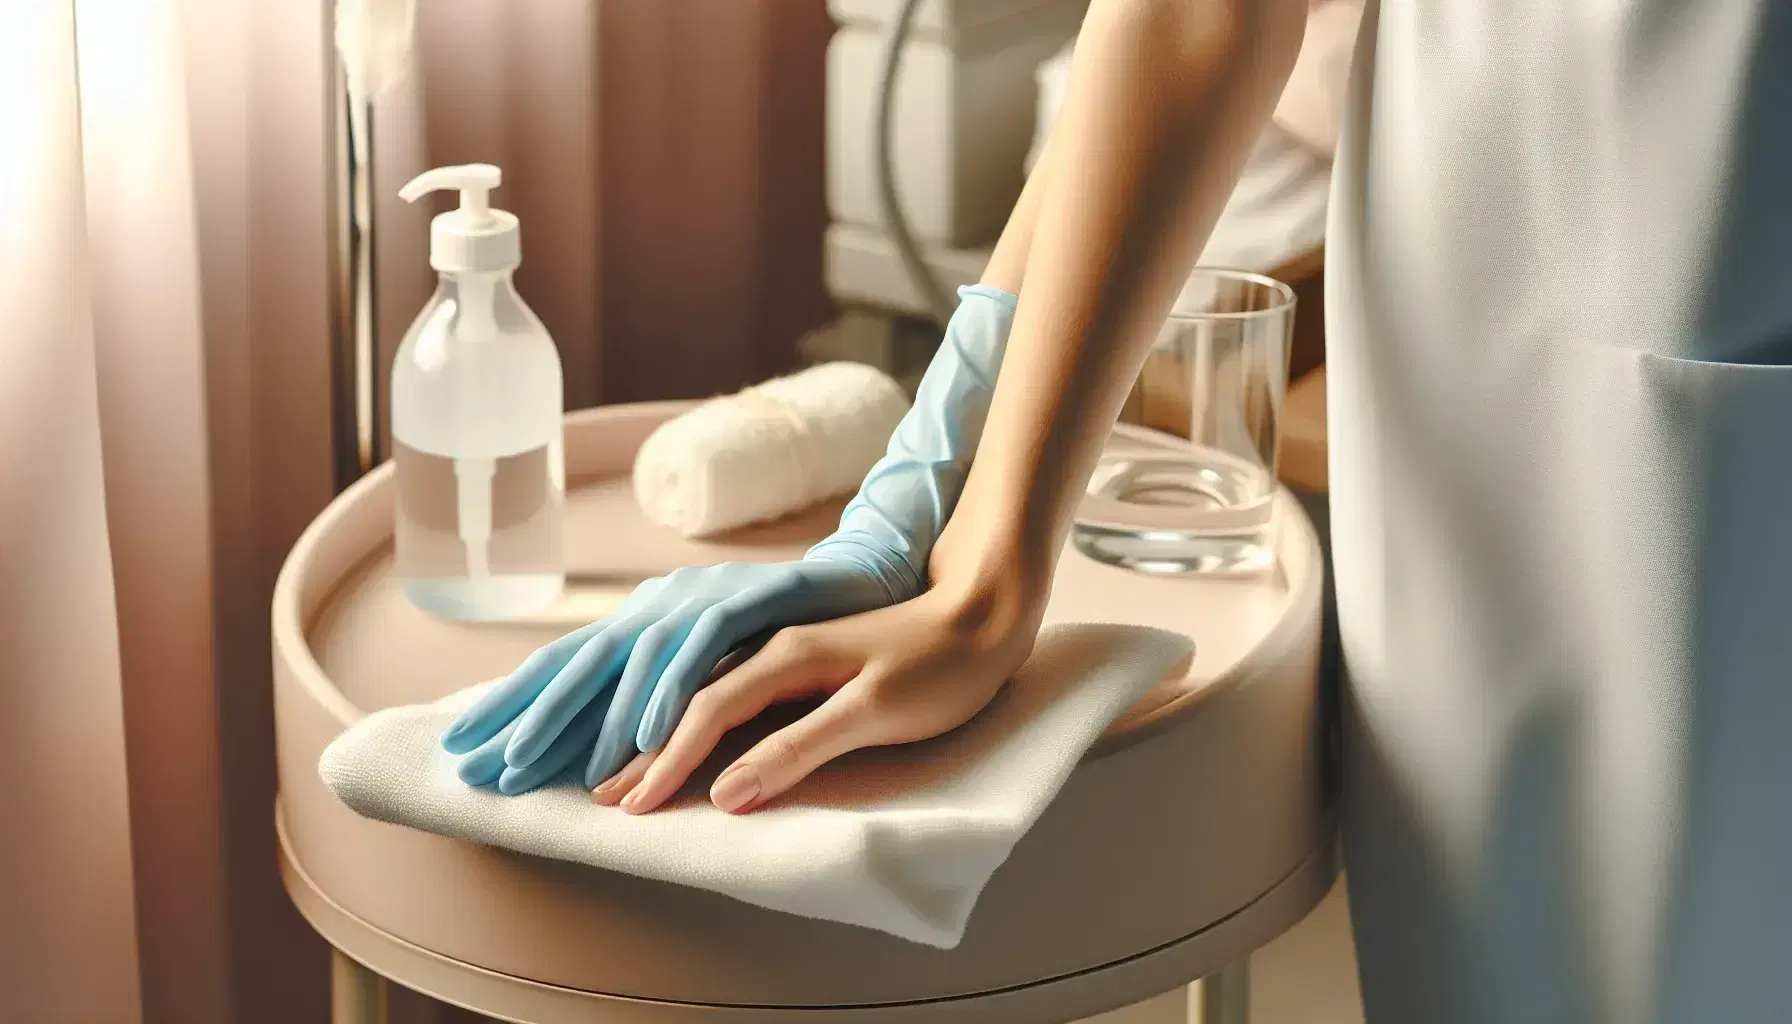 Manos de enfermera con guantes de látex azules sujetando con cuidado la mano de un paciente sobre una superficie blanca, en un entorno clínico tranquilo.